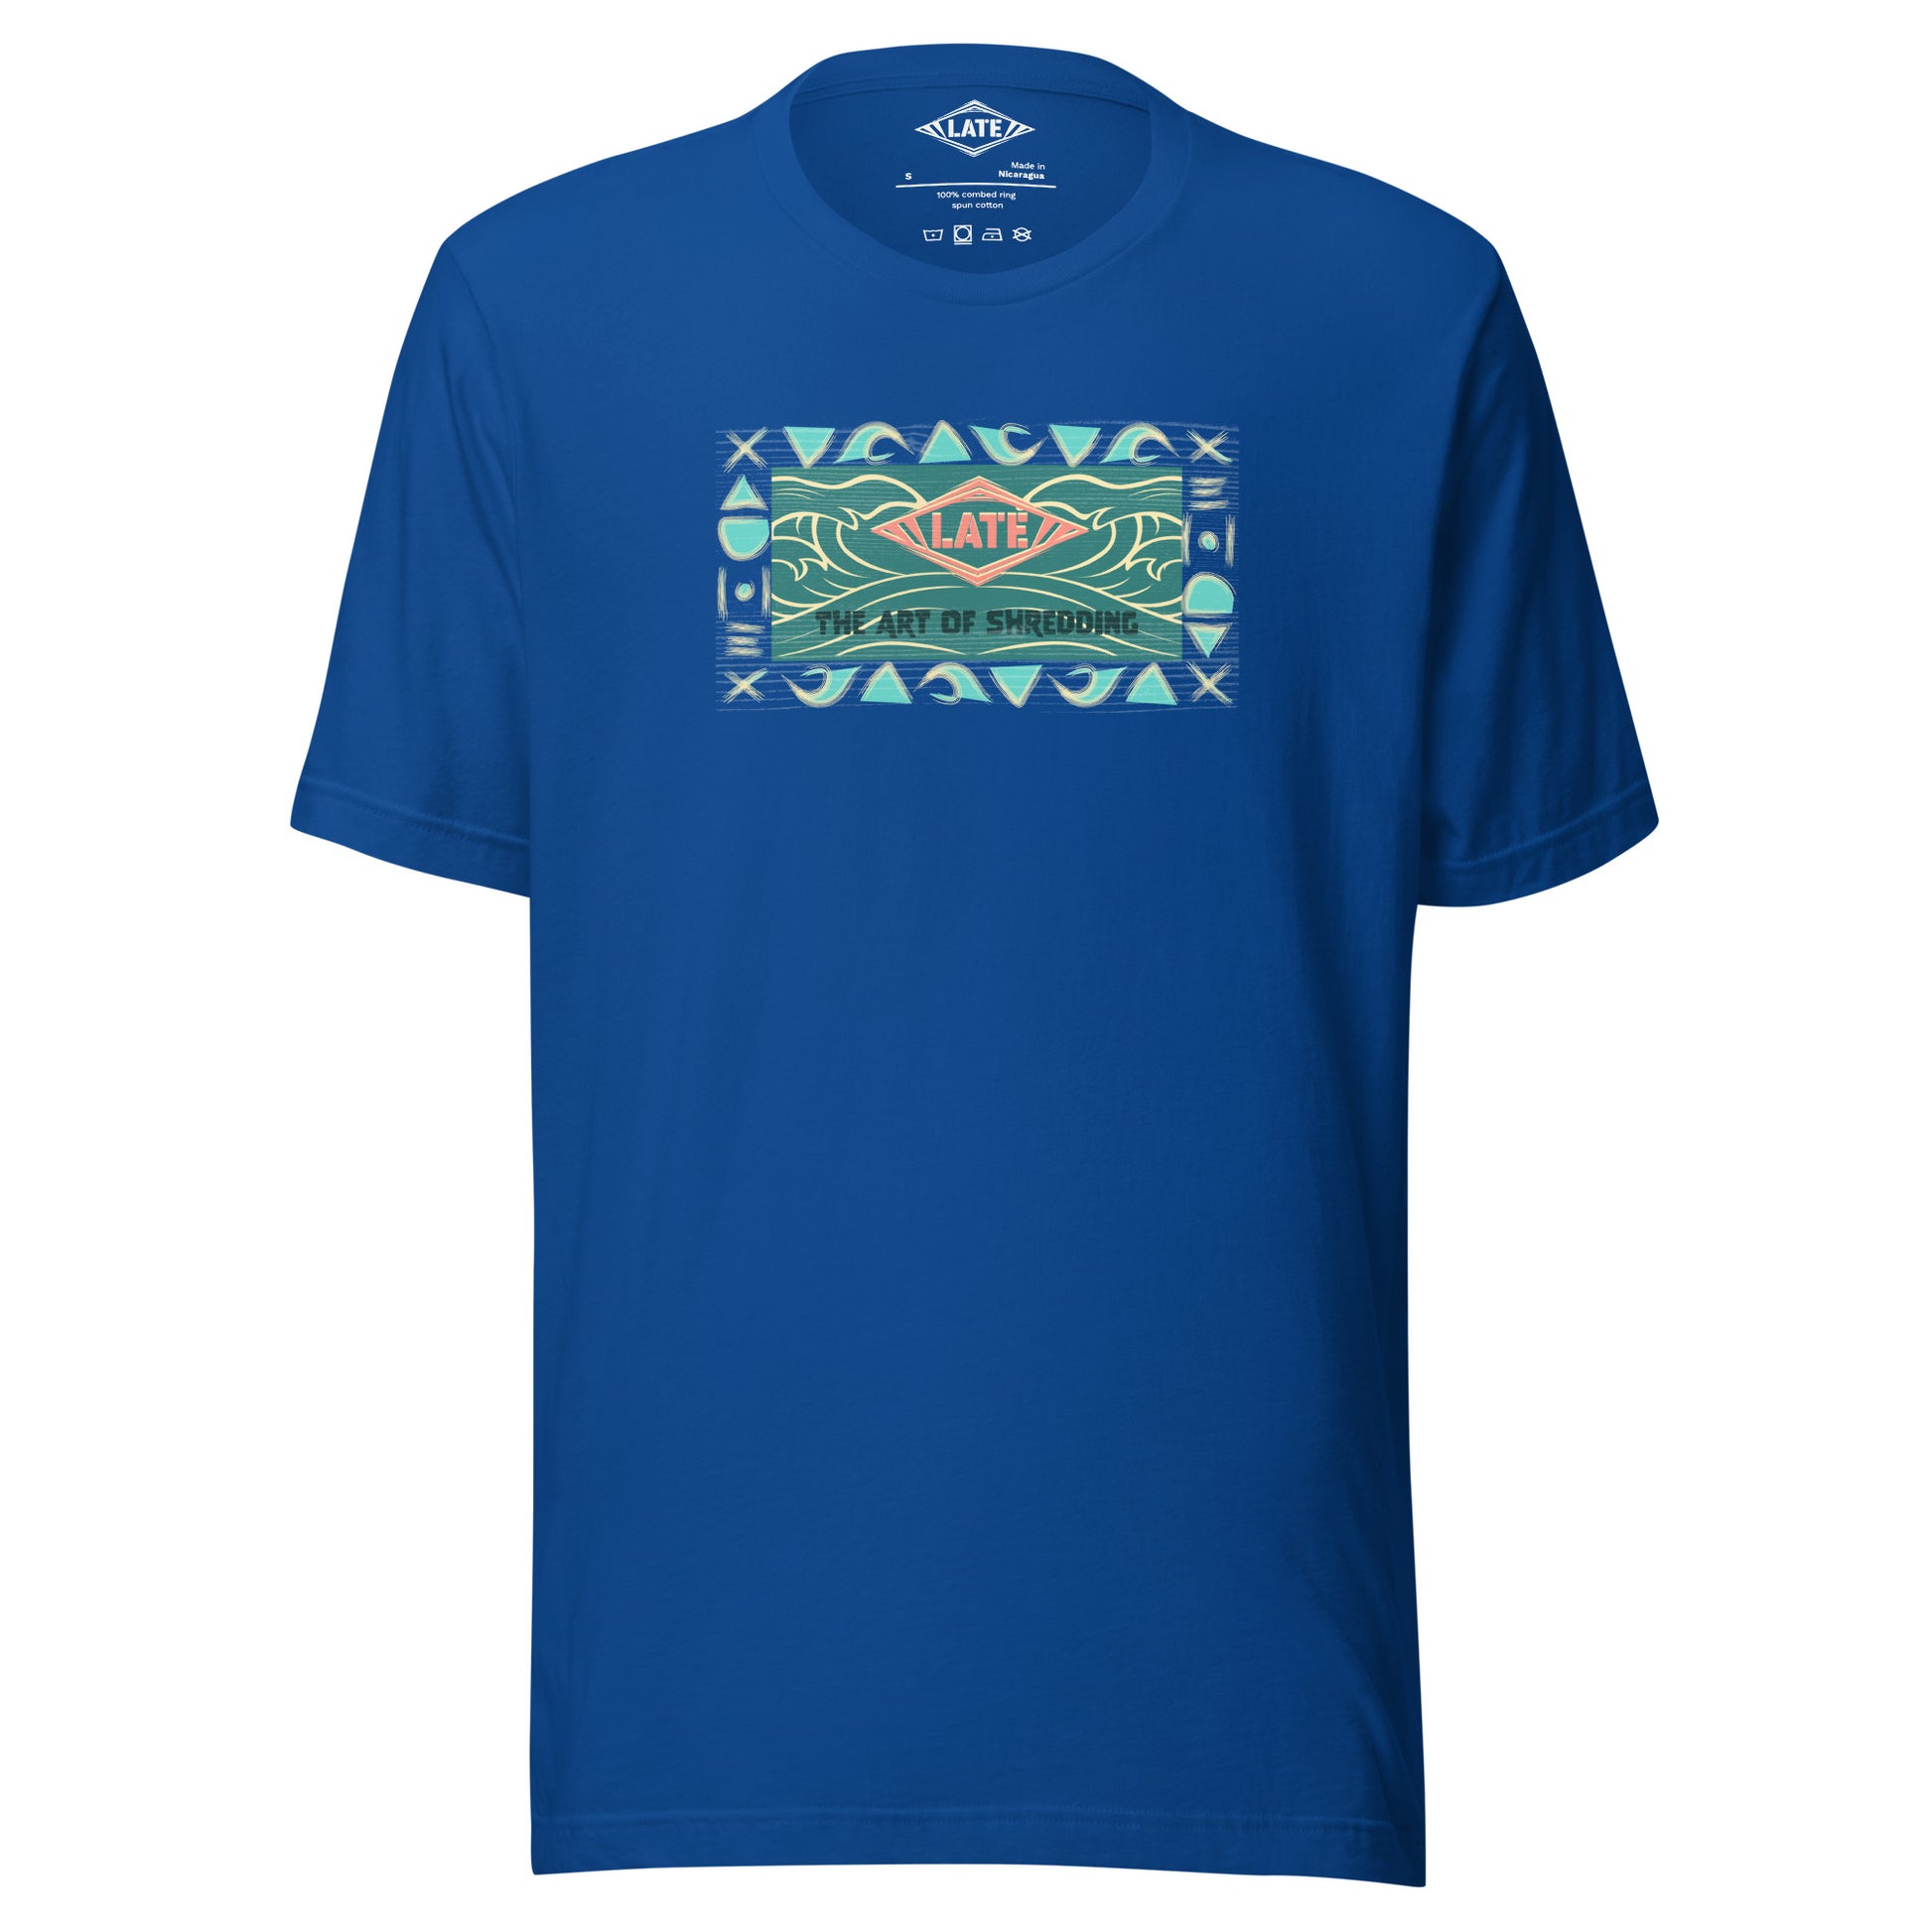 T-Shirt rétro surfwear art of shredding, logo Late surfshop motifs de vagues creuses, et dom-tom, t-shirt unisex bleu